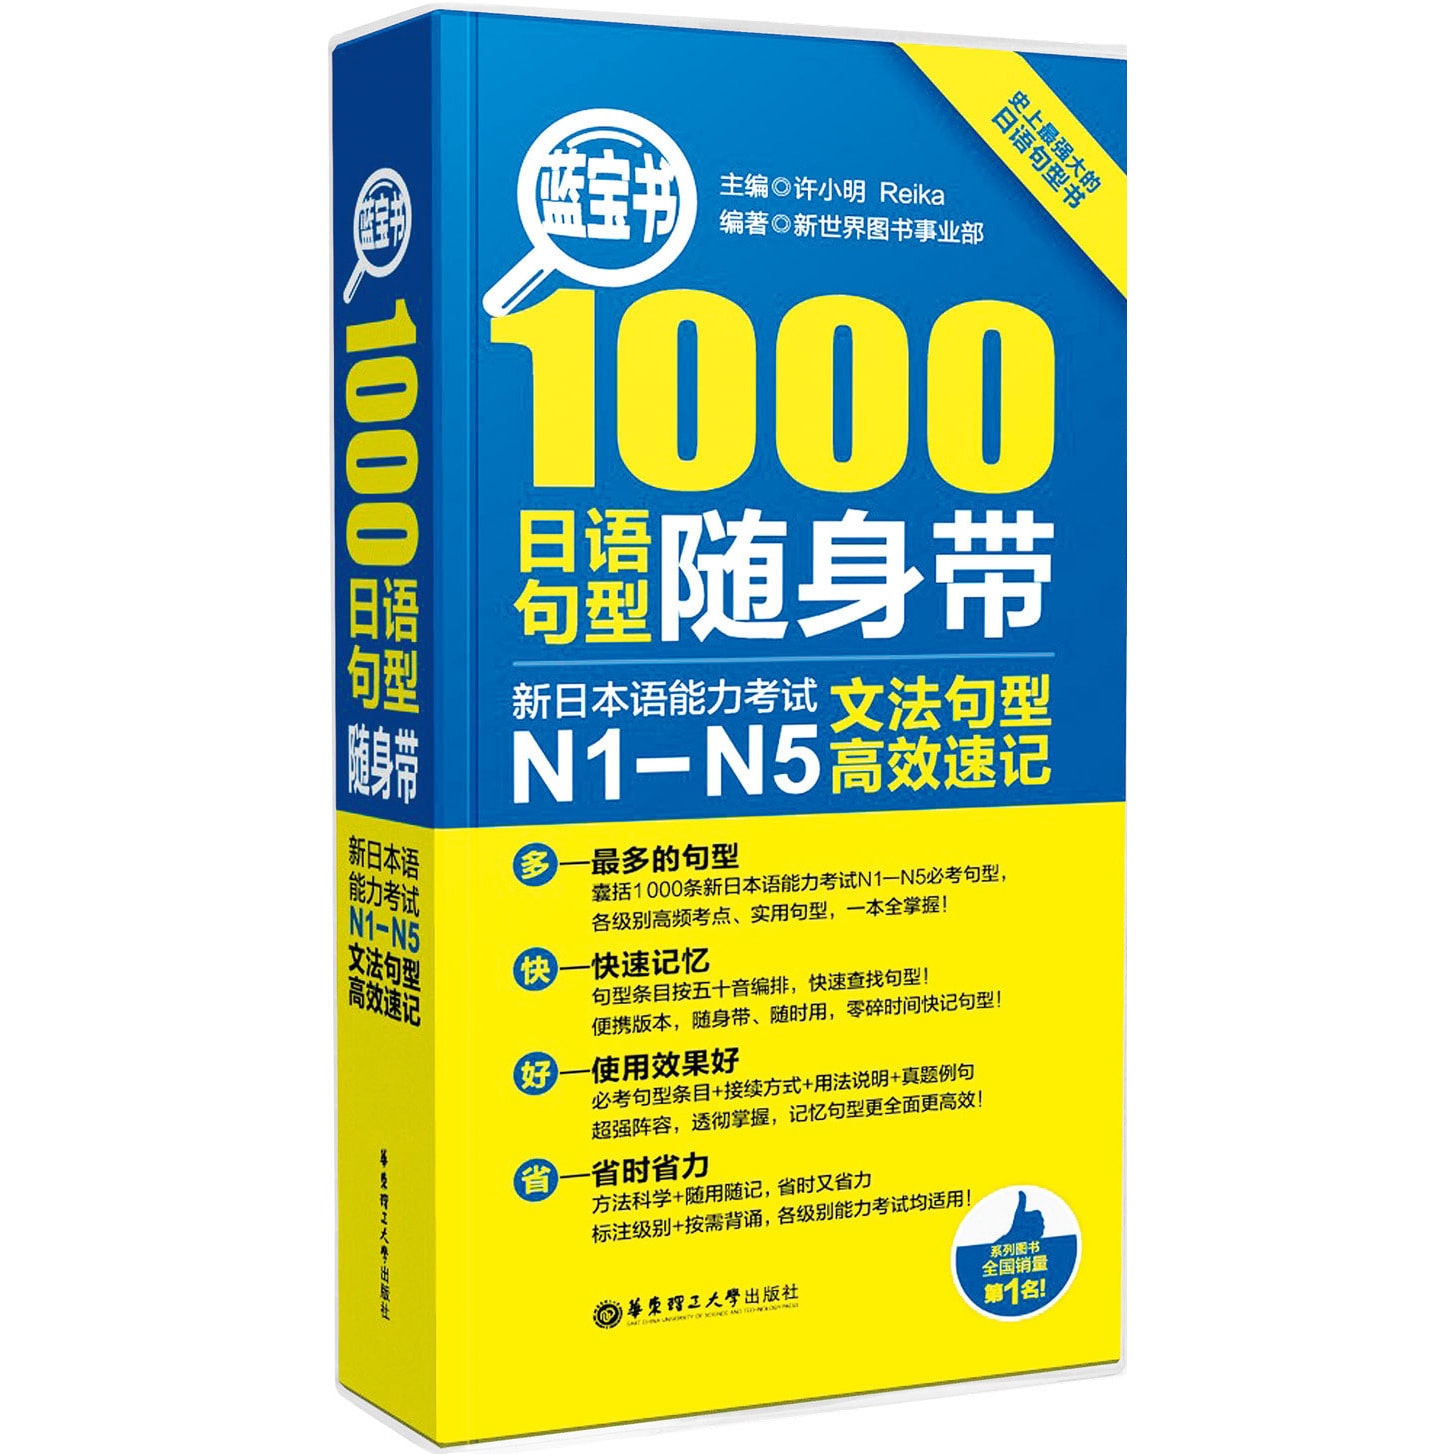 蓝宝书·1000日语句型随身带:新日本语能力考试N1-N5文法句型高效速记 怎么样 - 亚米网